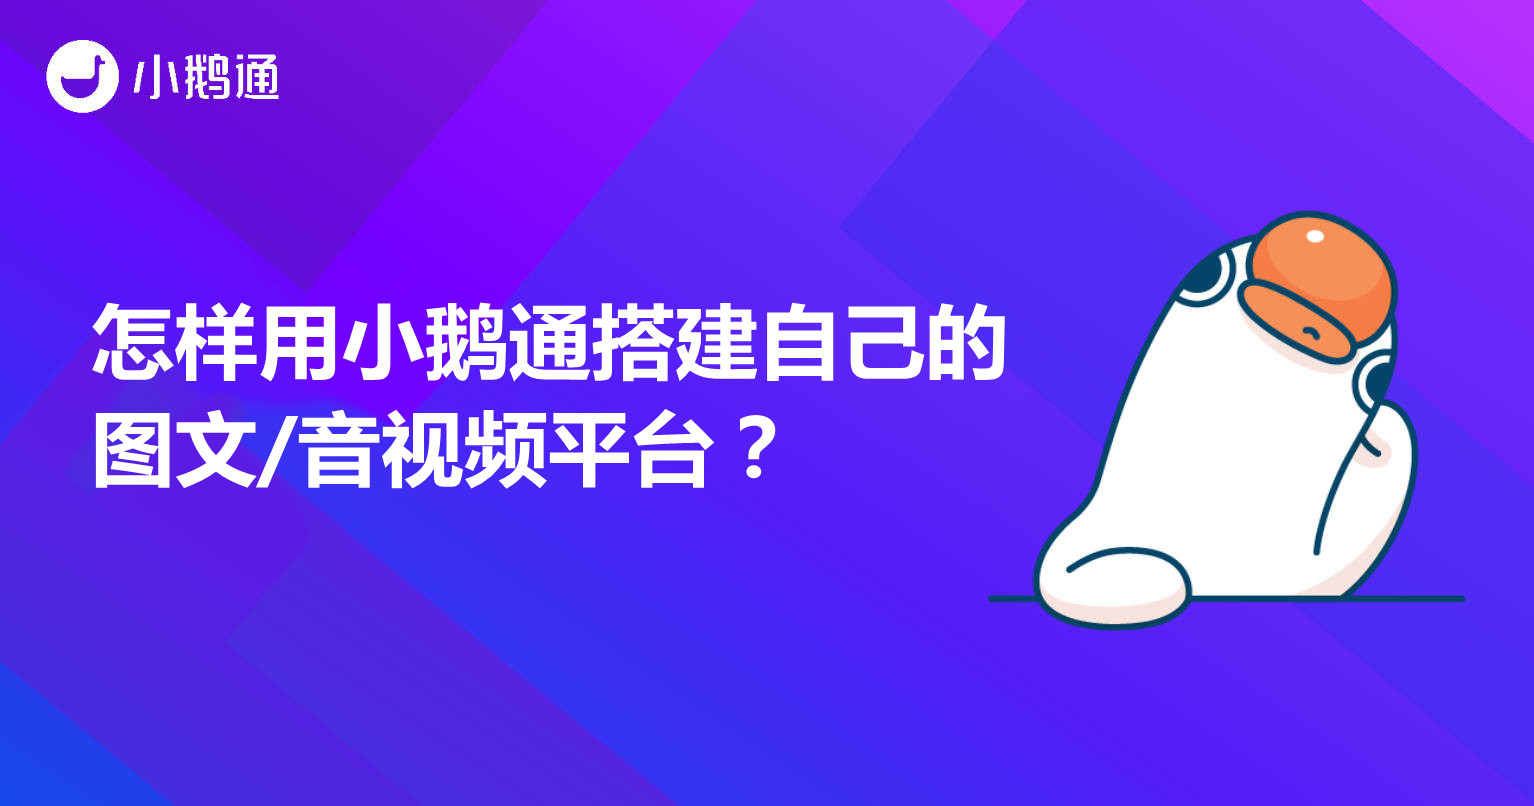 潞城怎样用小鹅通搭建自己的图文/音视频平台？